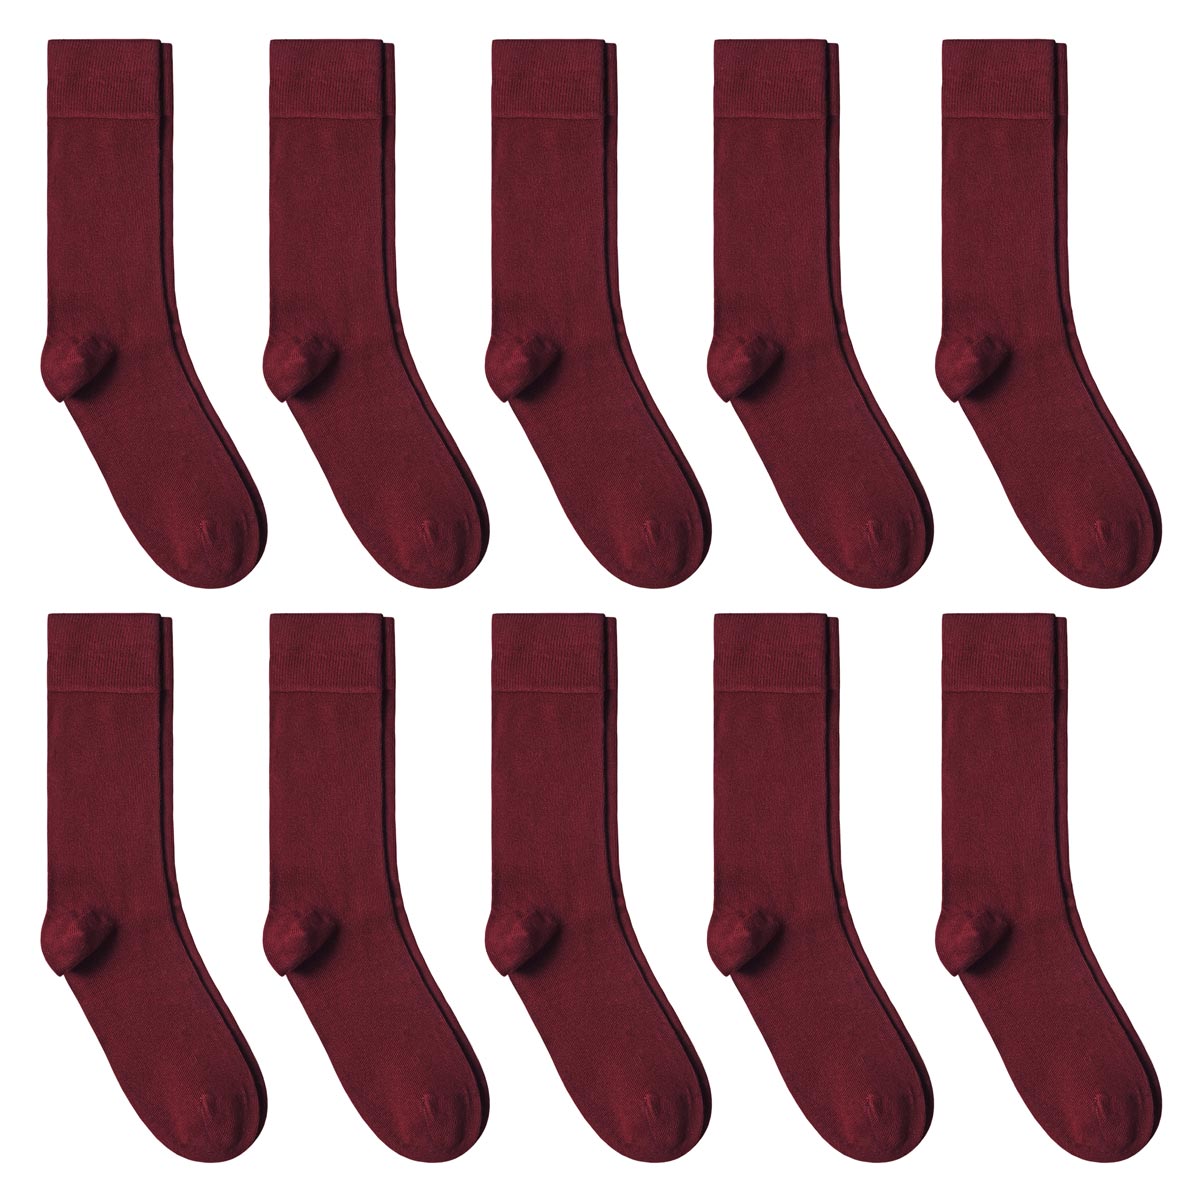 CH-00618_A12-1--_Lot-10-paires-de-chaussettes-homme-rouges-bordeaux-unies